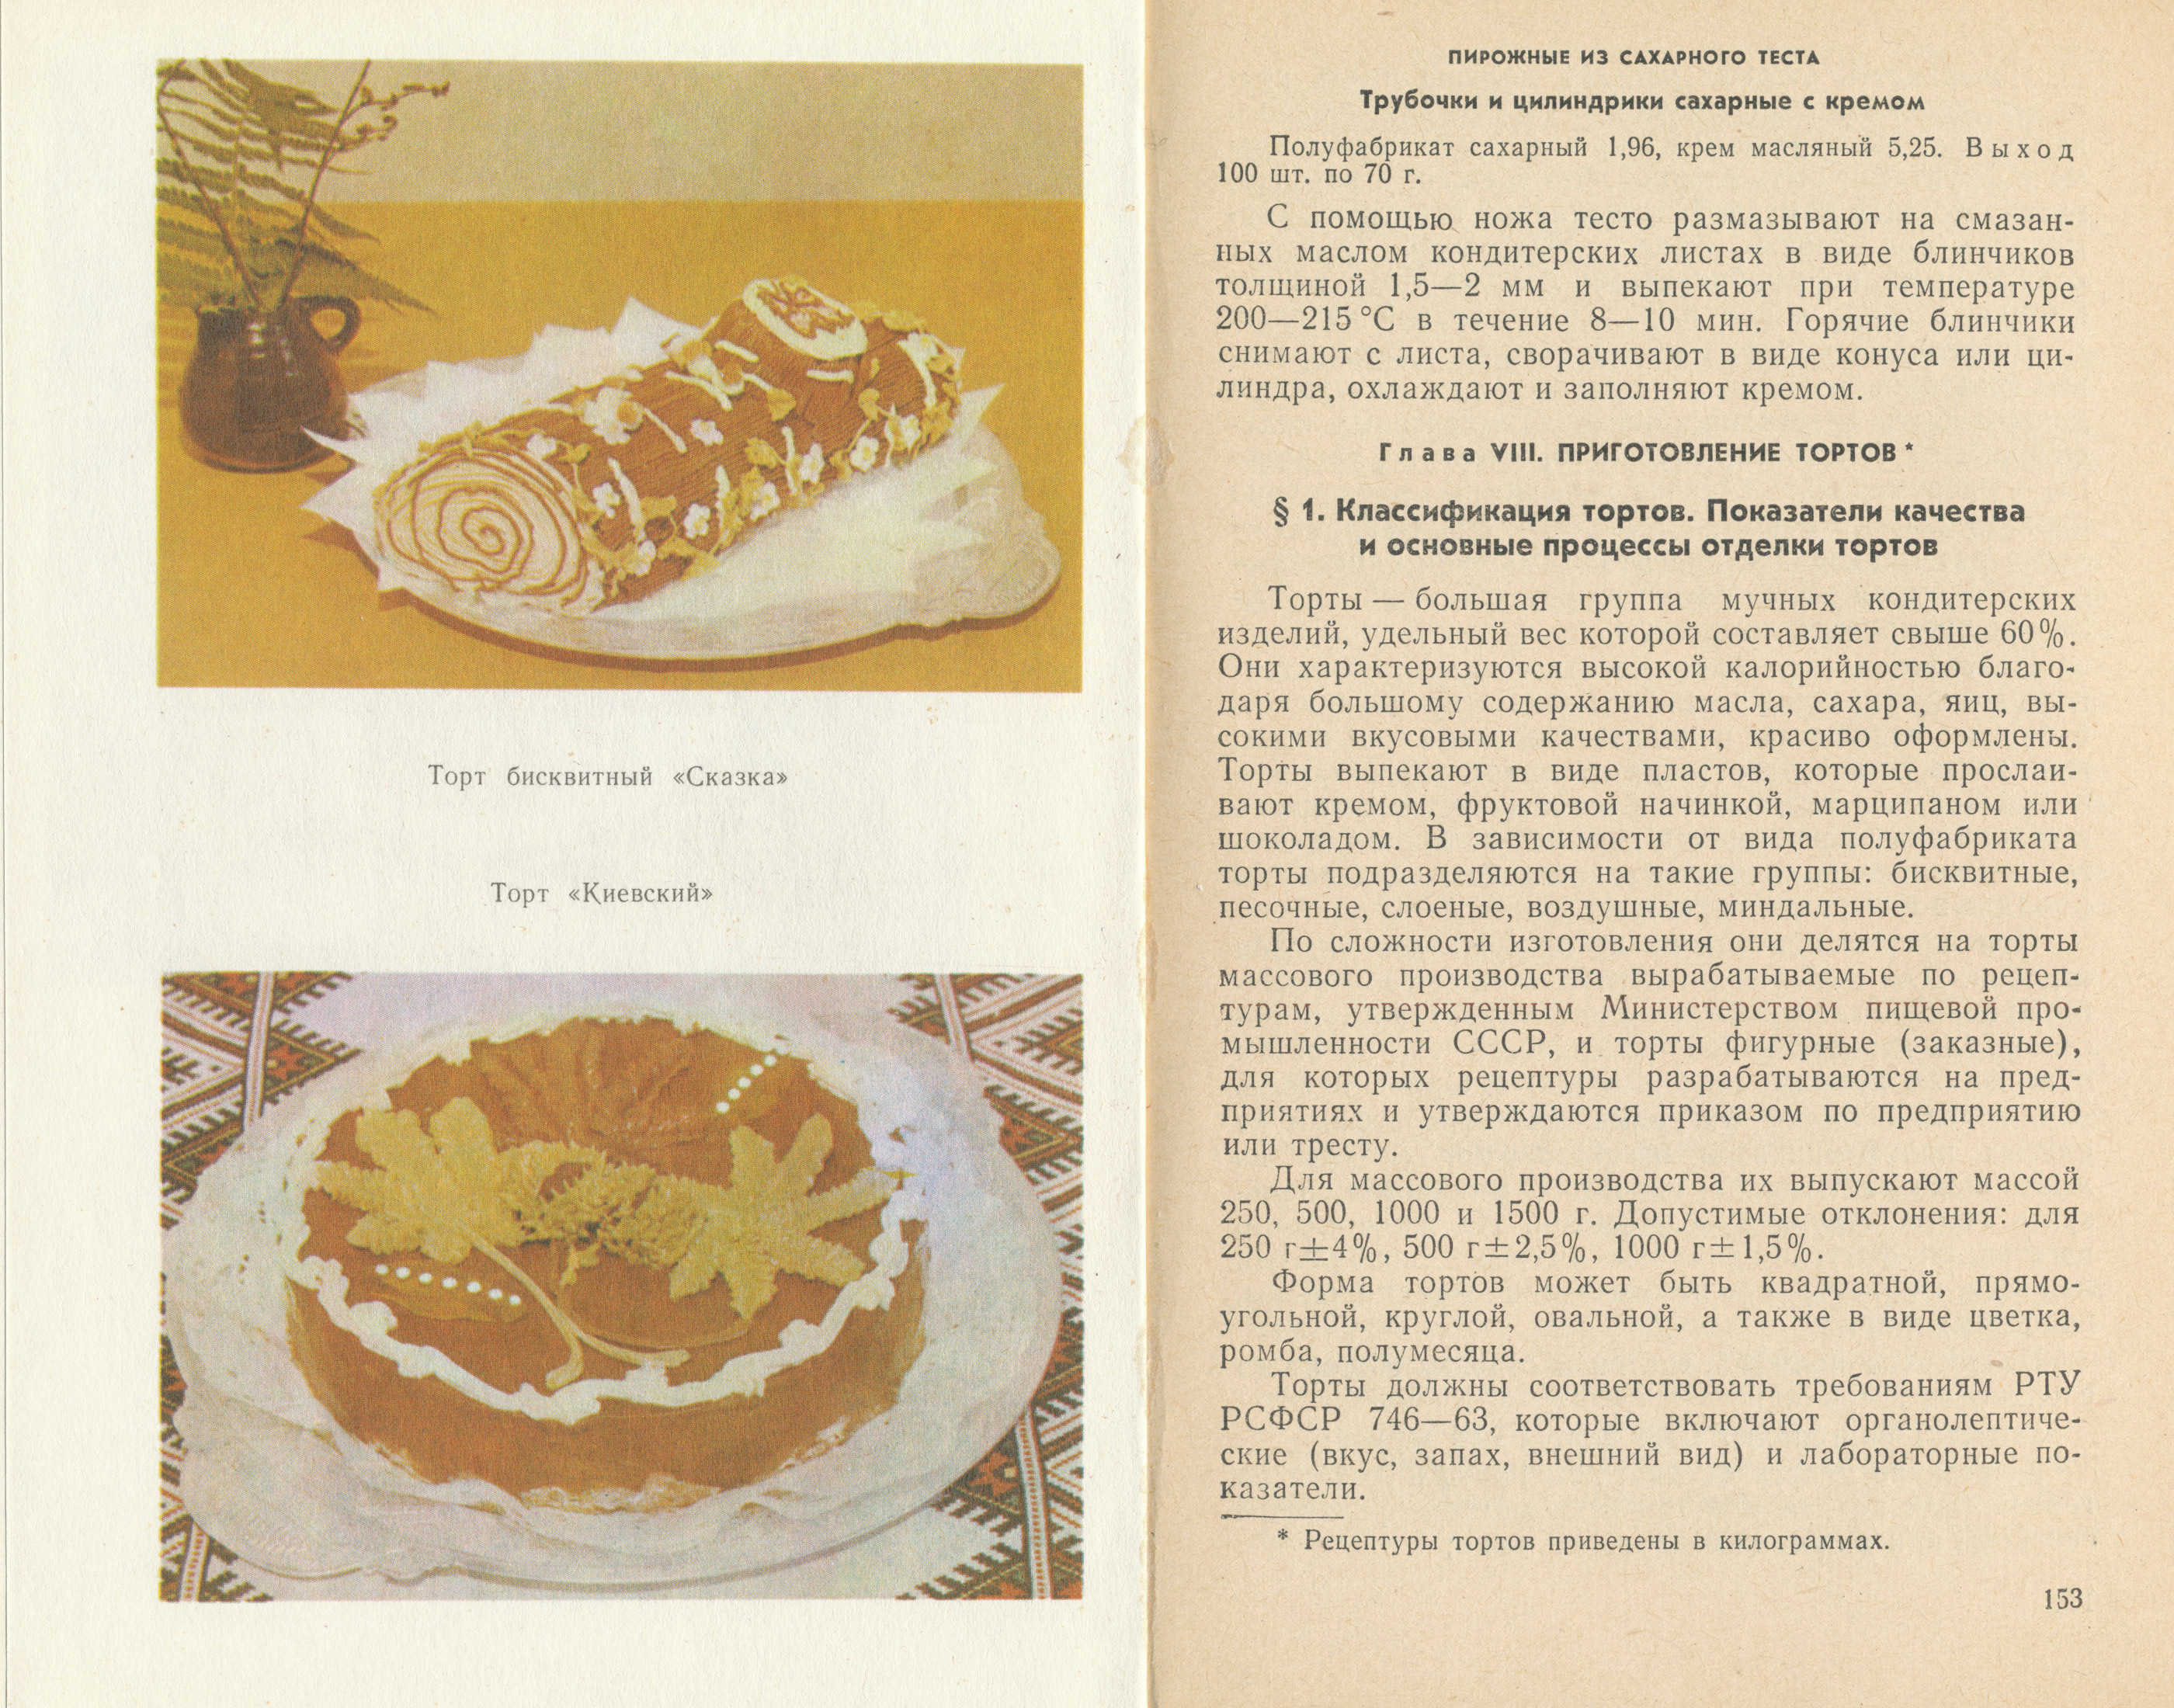 Confectionery technology L.A. Butenko, L. Ya. Kovtunenko, J.A. Khovikova 1980  pages 202‒203